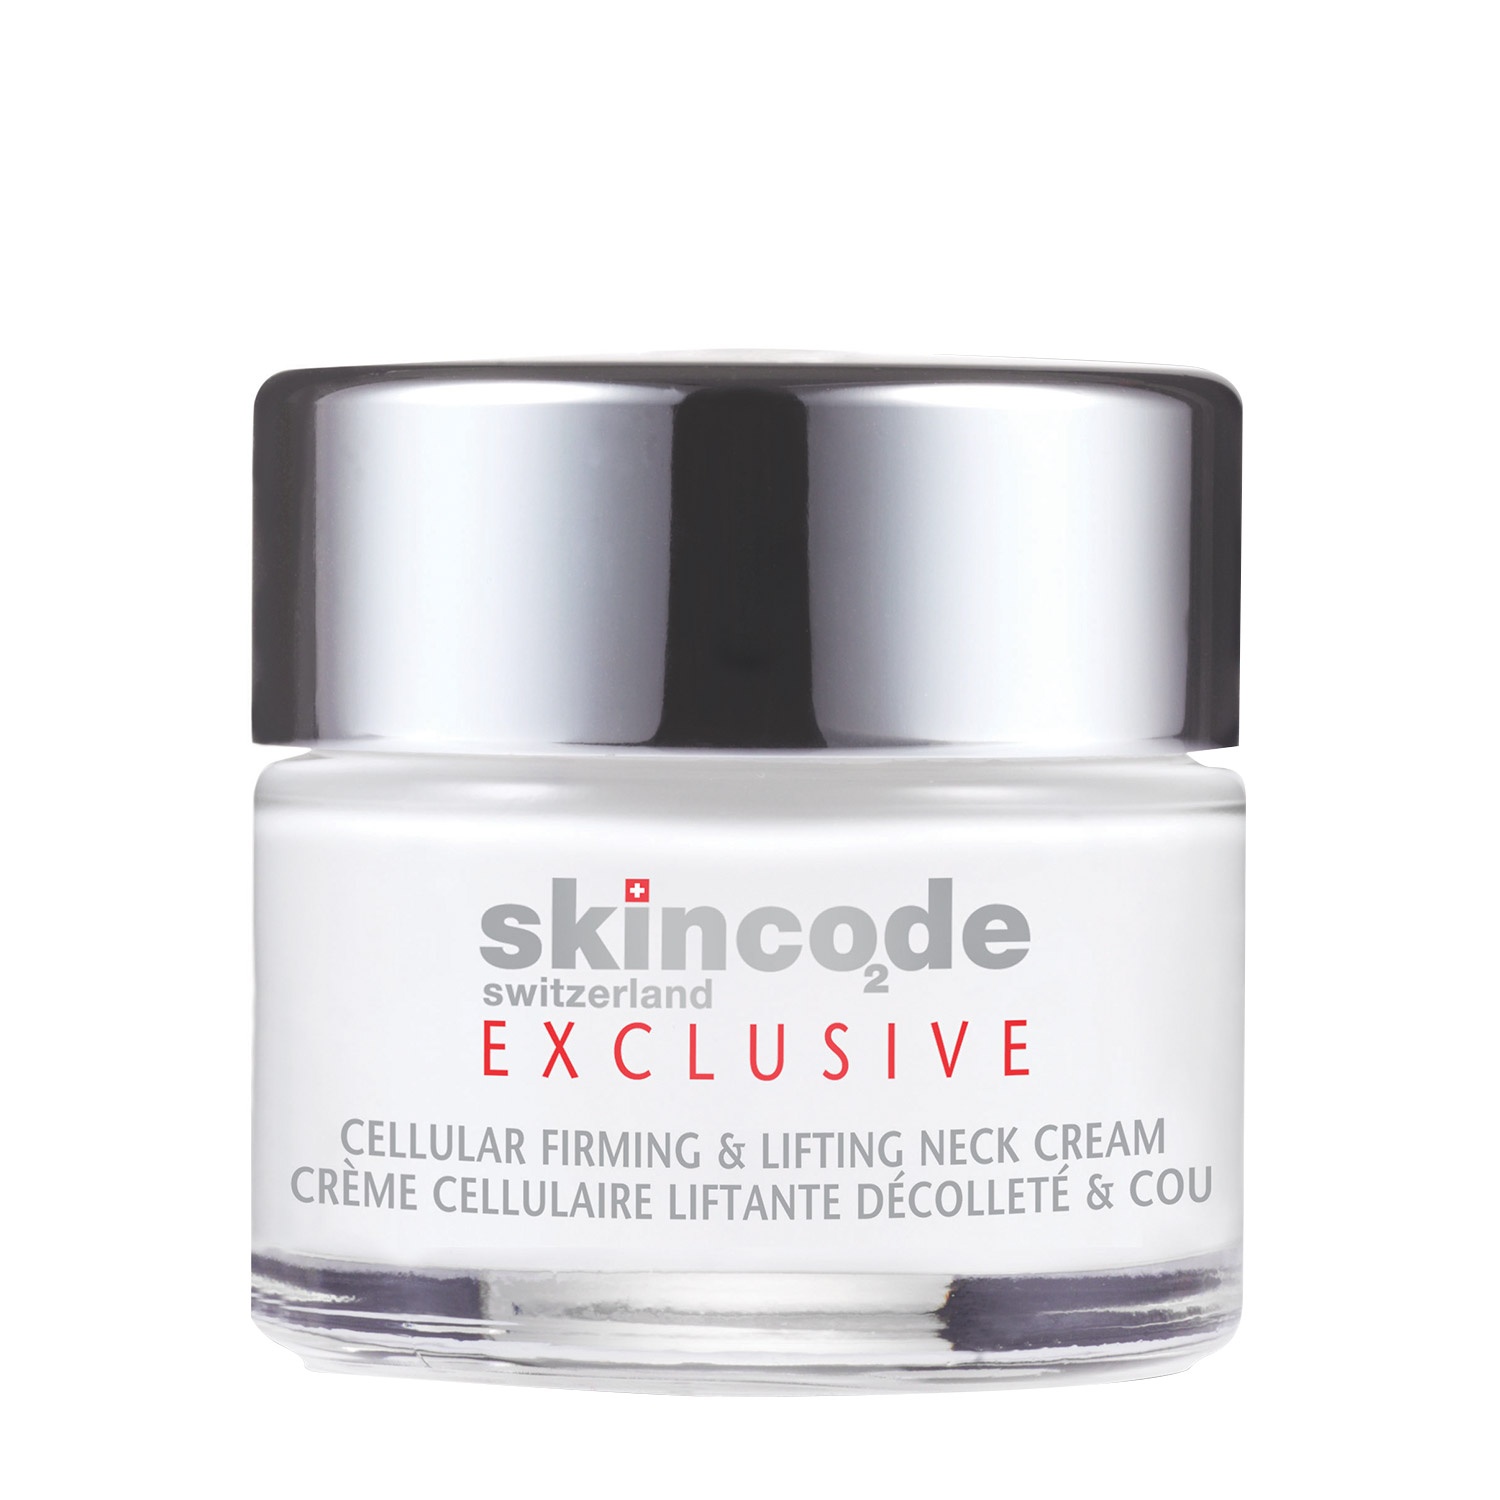 Kem nâng cơ và làm săn chắc da vùng cổ Skincode Exclusive Cellular Firming & Lifting Neck Cream